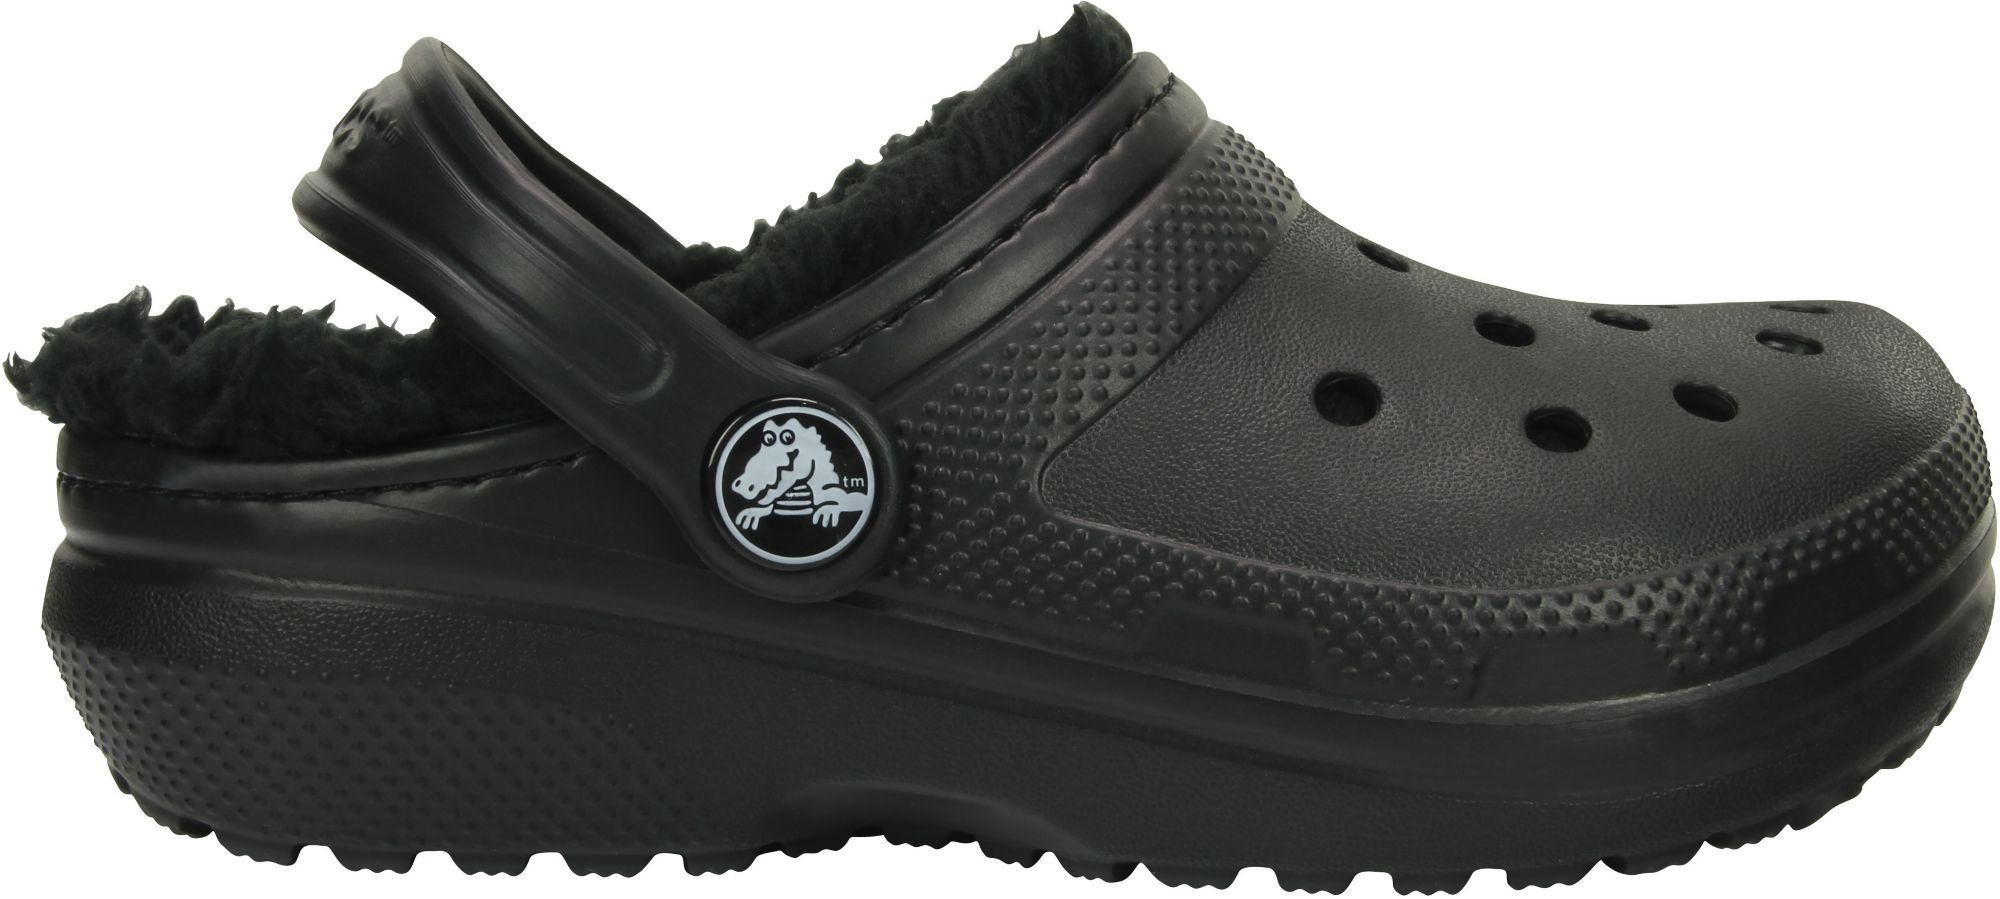 crocs kid shoes